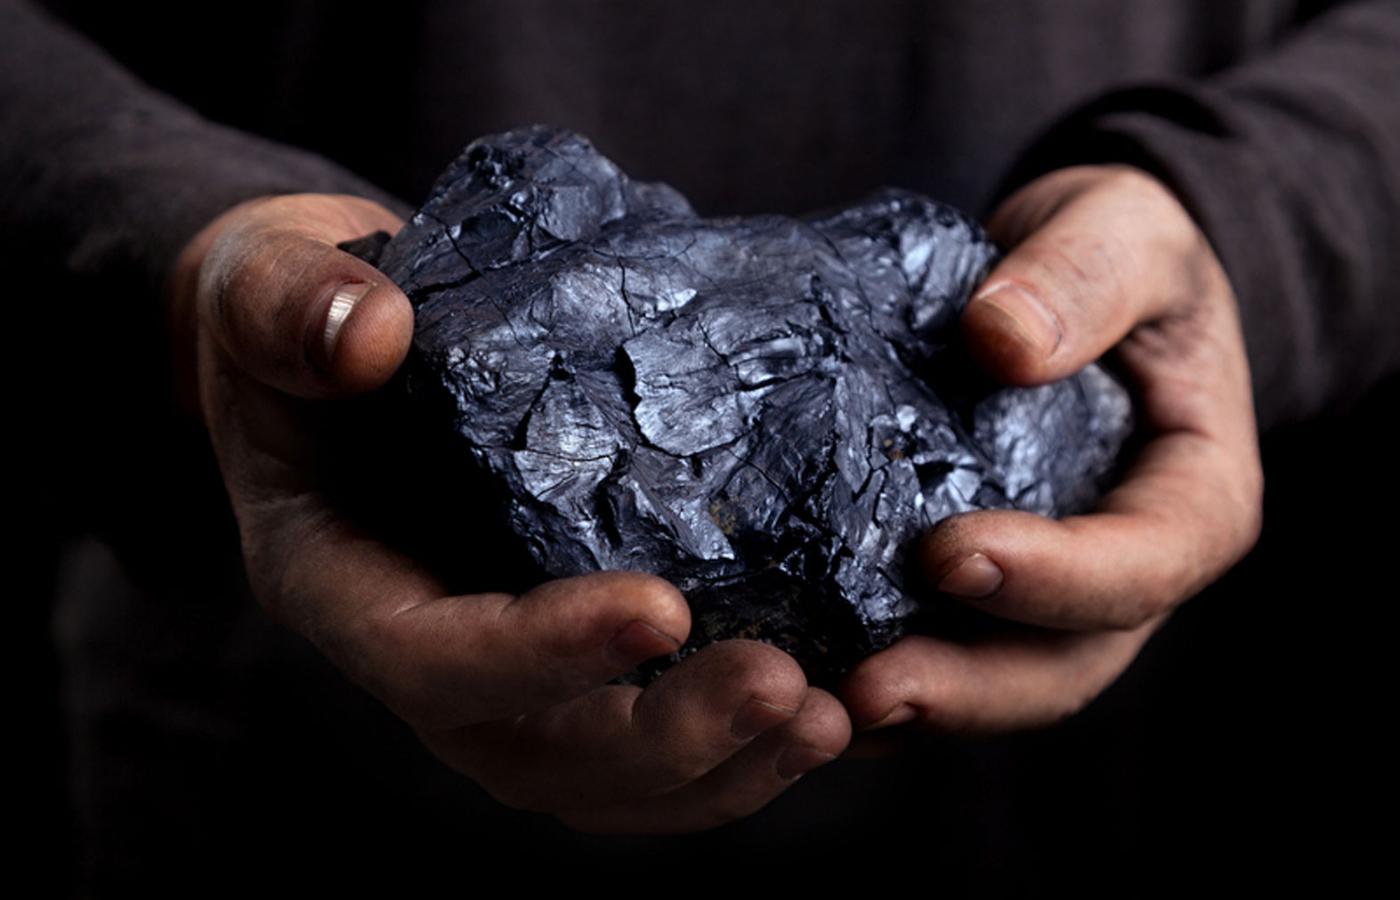 Polskie górnictwo wydobywa rocznie 55 mln ton węgla kamiennego, z czego 12 mln ton to węgiel koksowy dla hut.